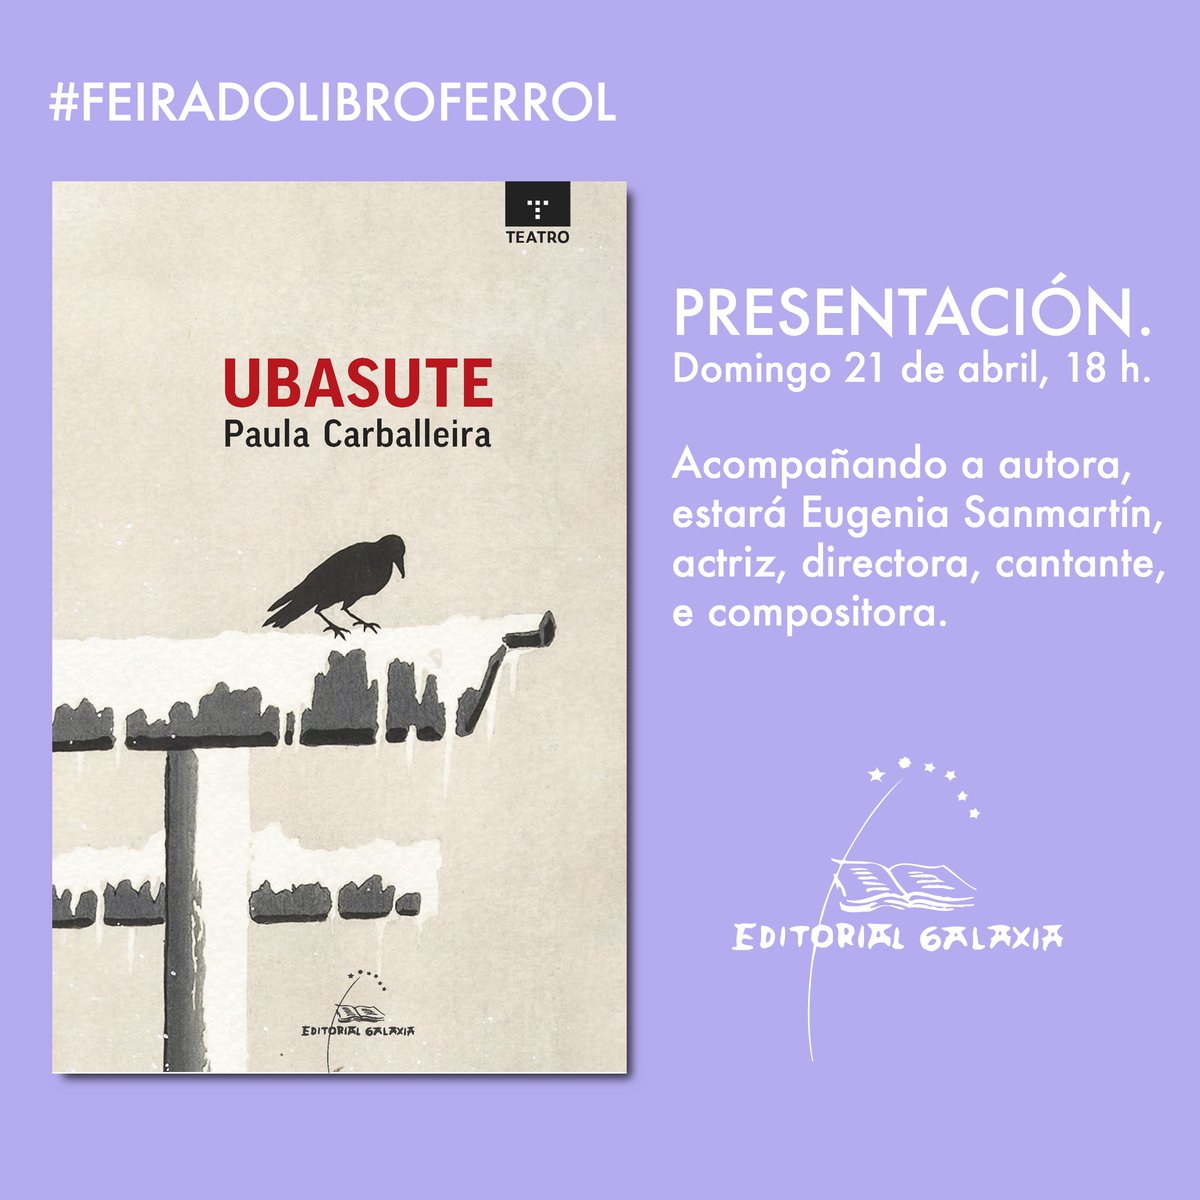 HOXE comeza a Feira do Libro de #Ferrol, a primeira nesta nova edición, que estará aberta ata o domingo 21. Celebrarase na Praza da Constitución da cidade. @RPerezPablo